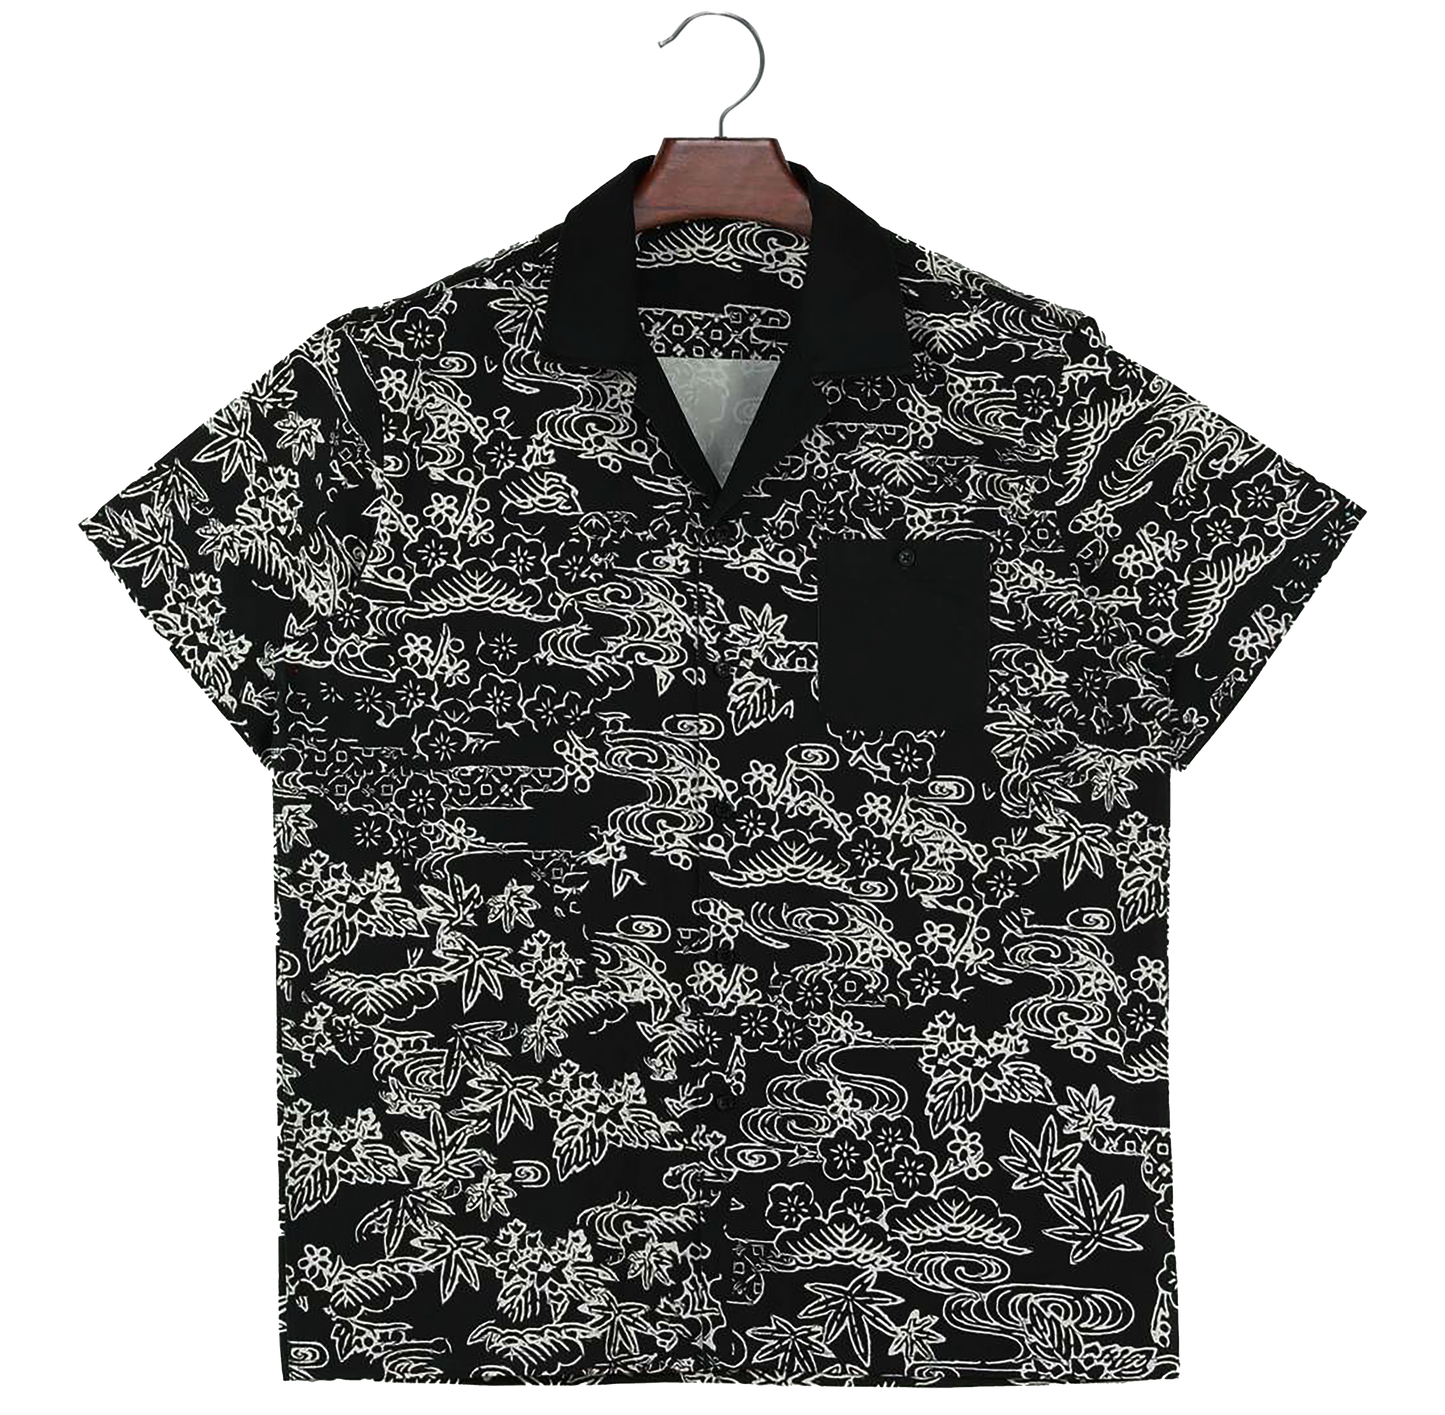 Okinawa Patterned Button Shirt